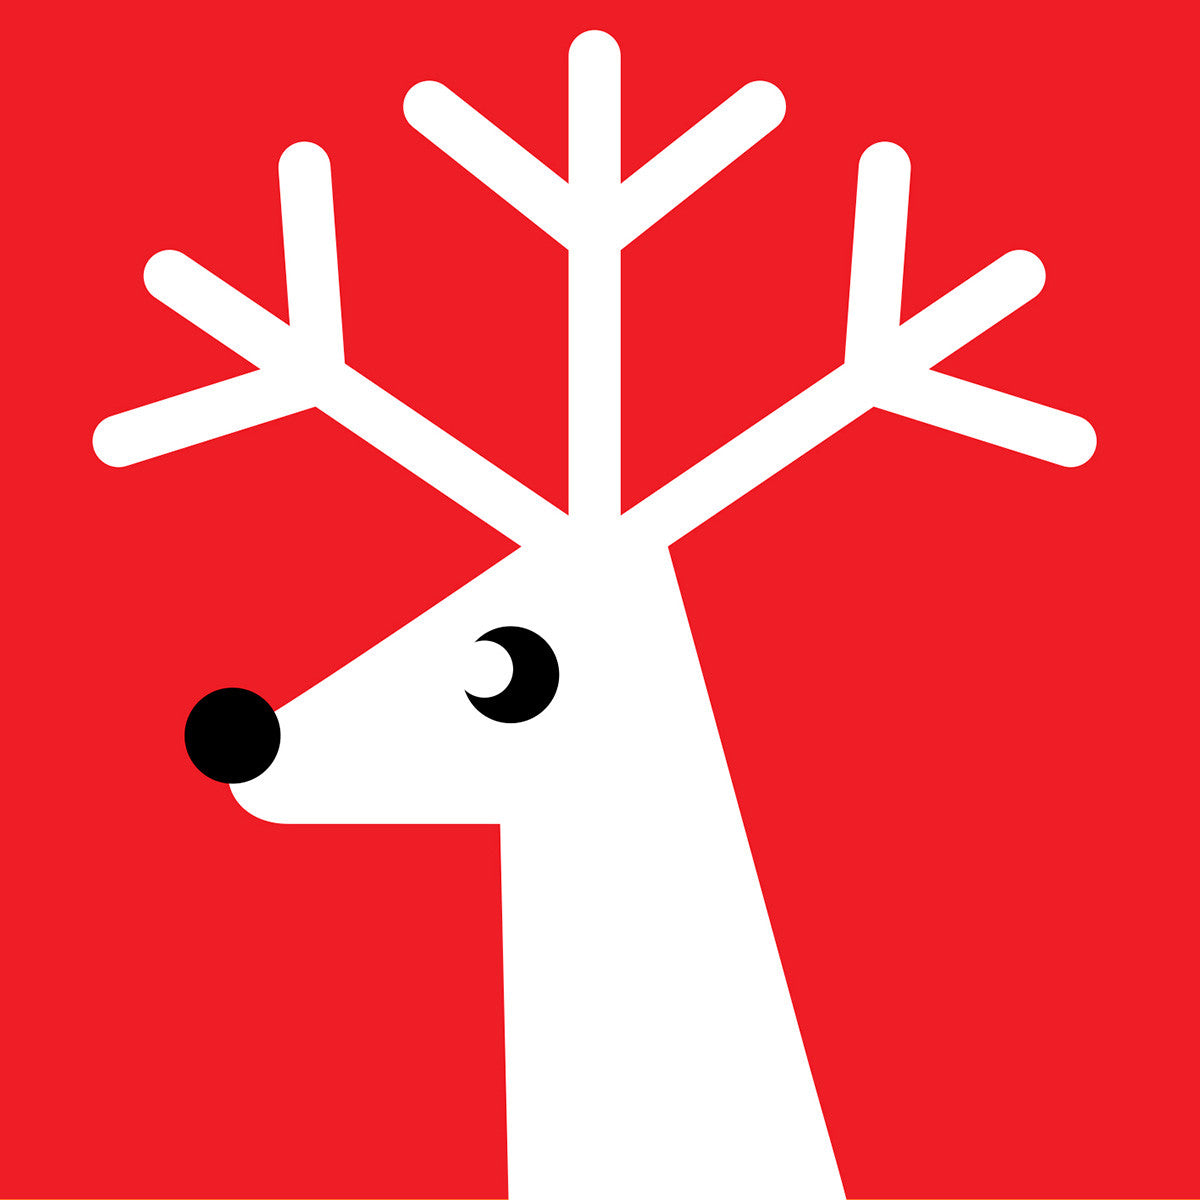 Red reindeer Christmas card